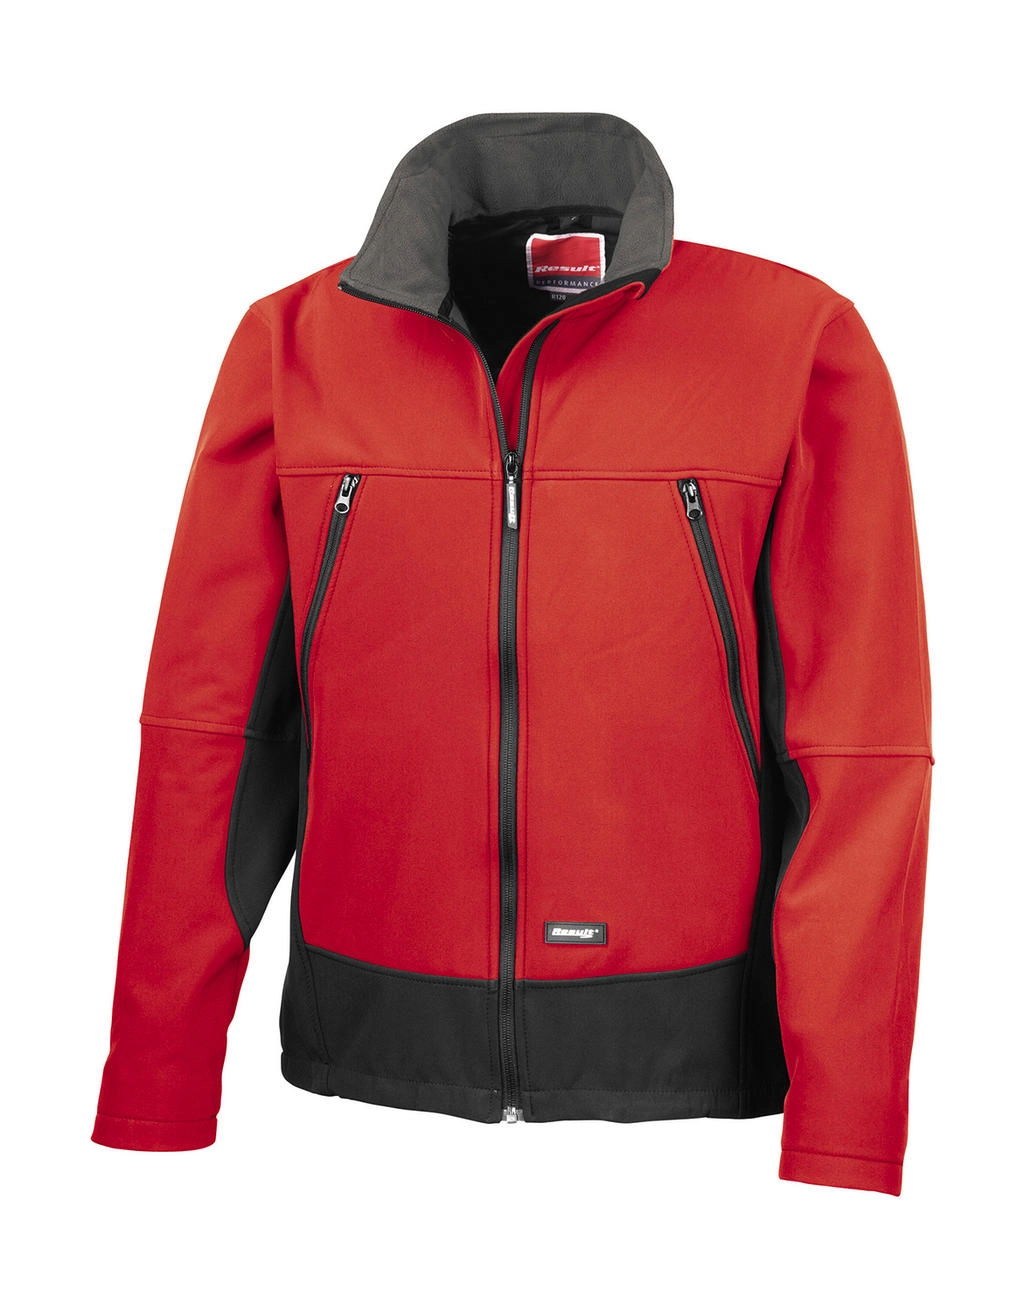 Softshell Activity Jacket zum Besticken und Bedrucken in der Farbe Red/Black mit Ihren Logo, Schriftzug oder Motiv.